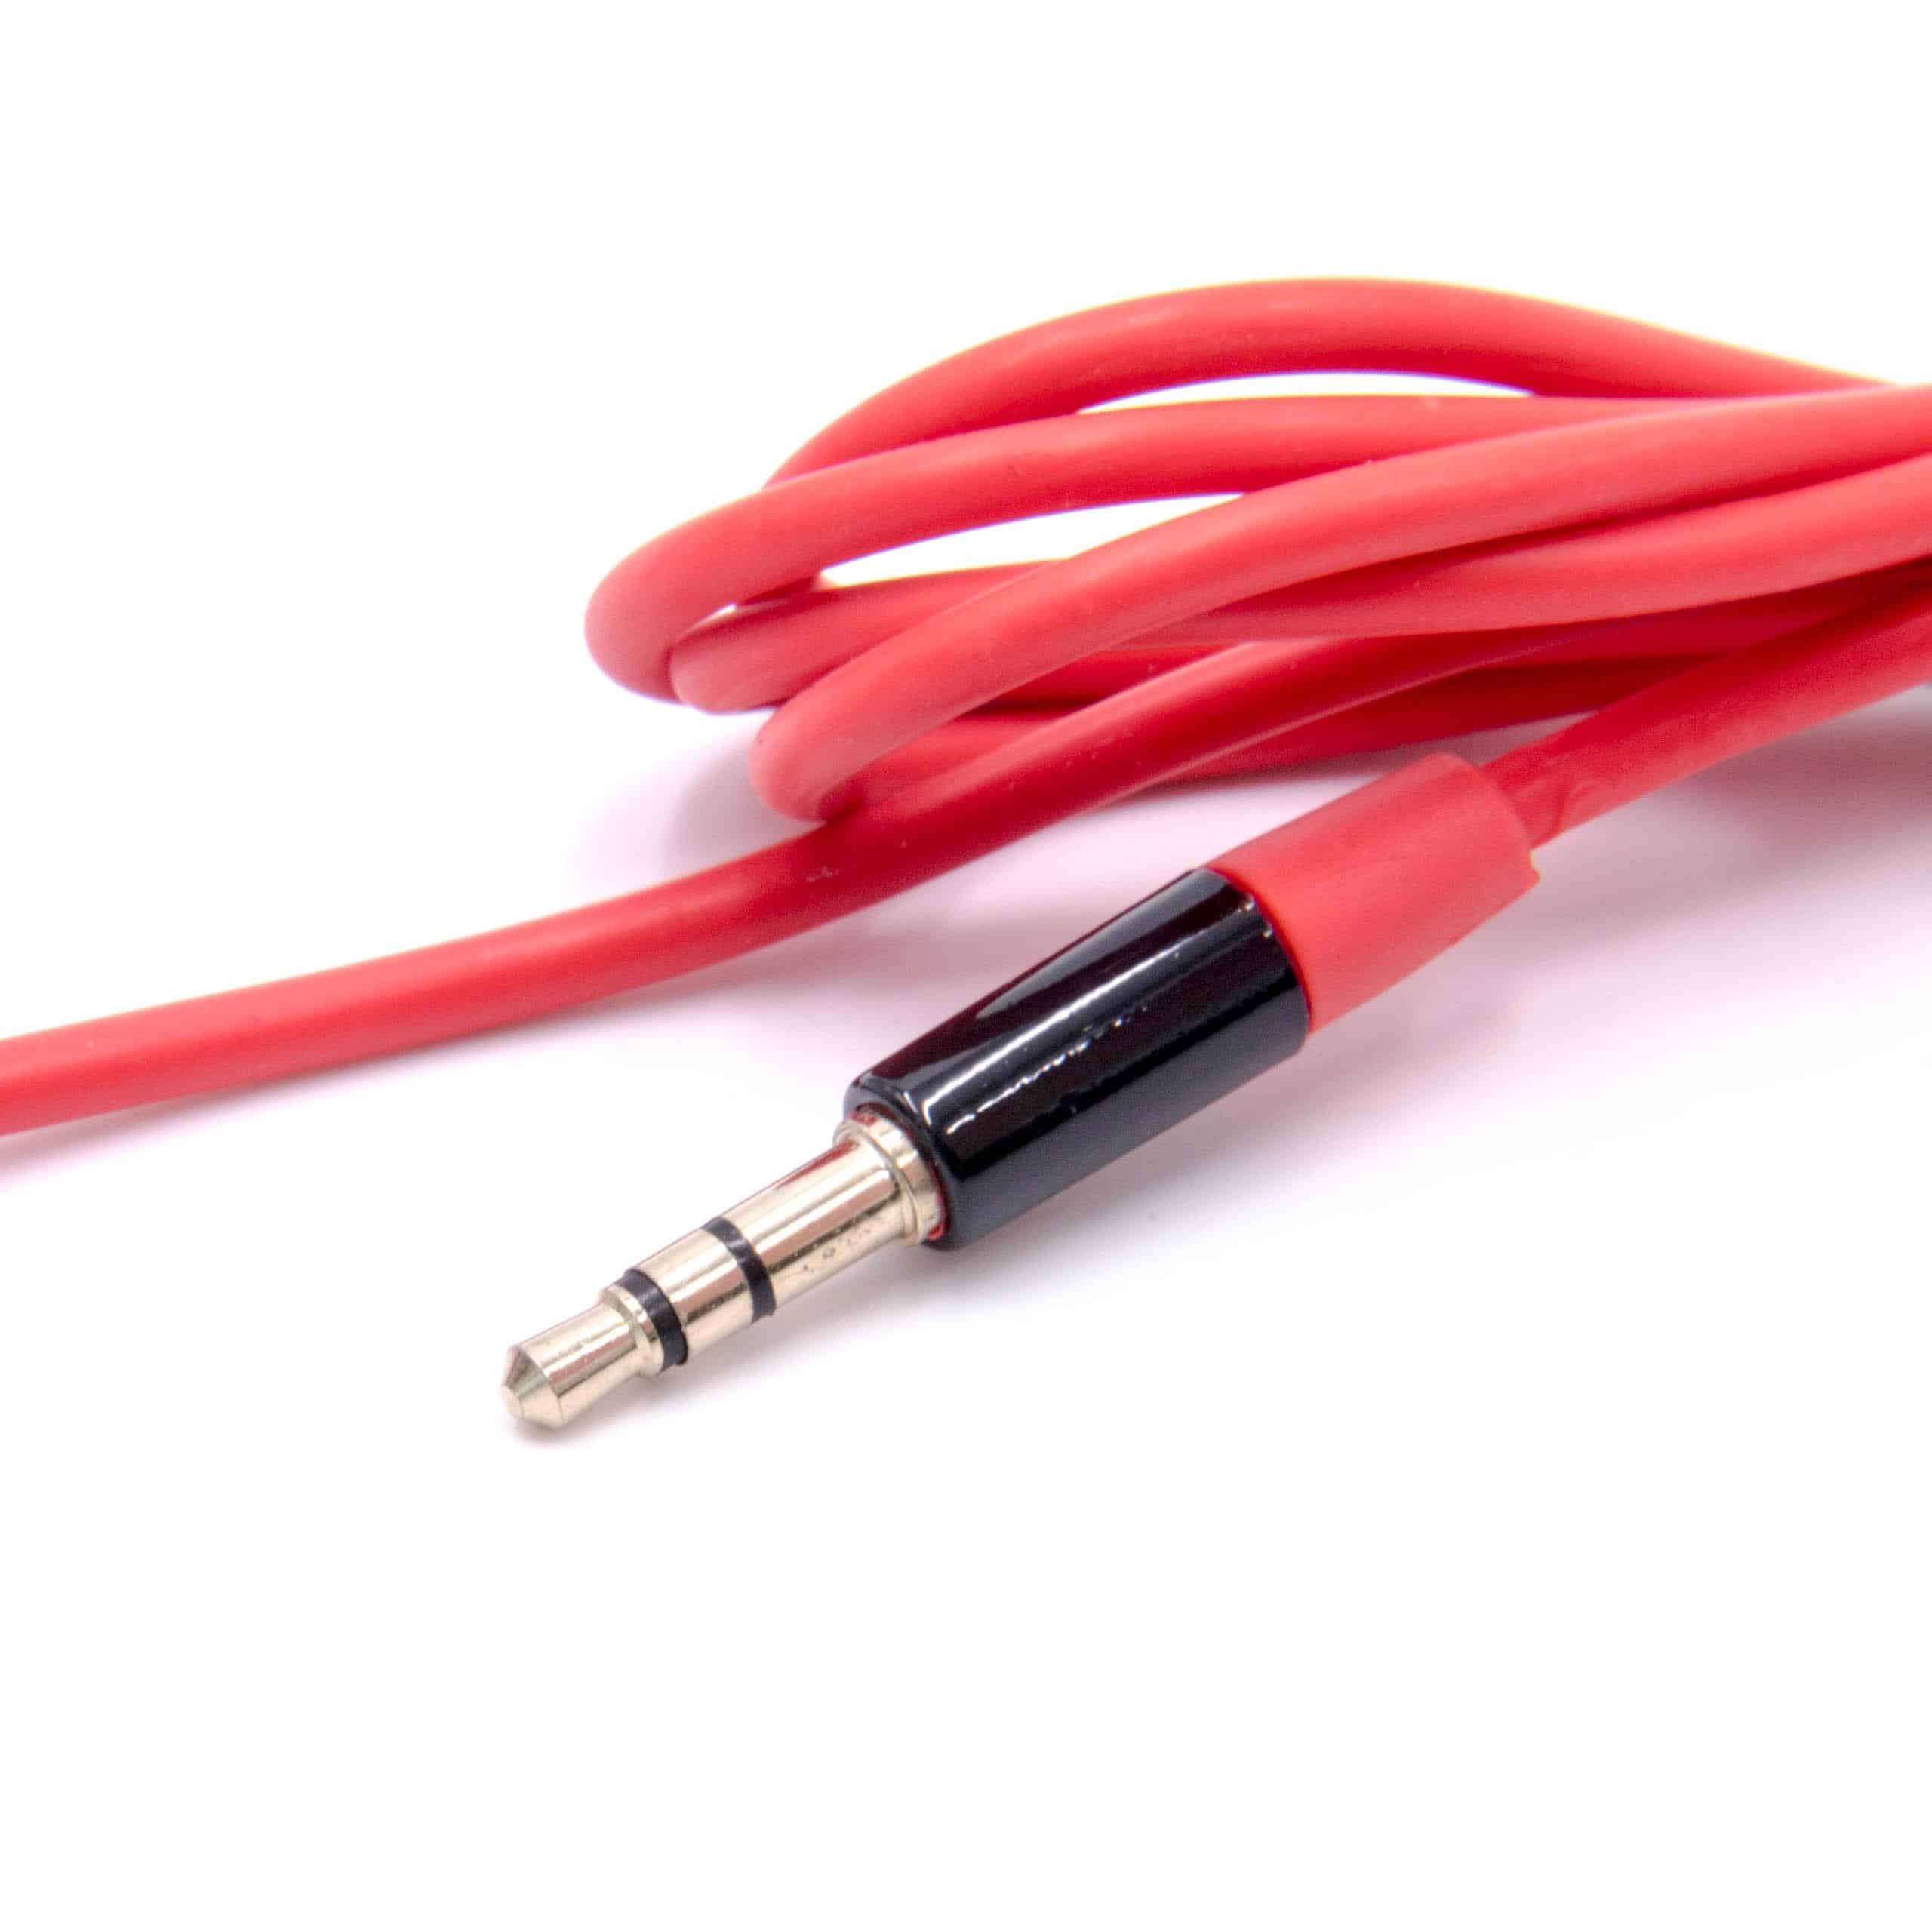 Kabel do słuchawek z mikrofonem do Beats by Dr. Dre zamiennik Beats by Dr. Dre MHE12G/A - czerwony, 120 cm